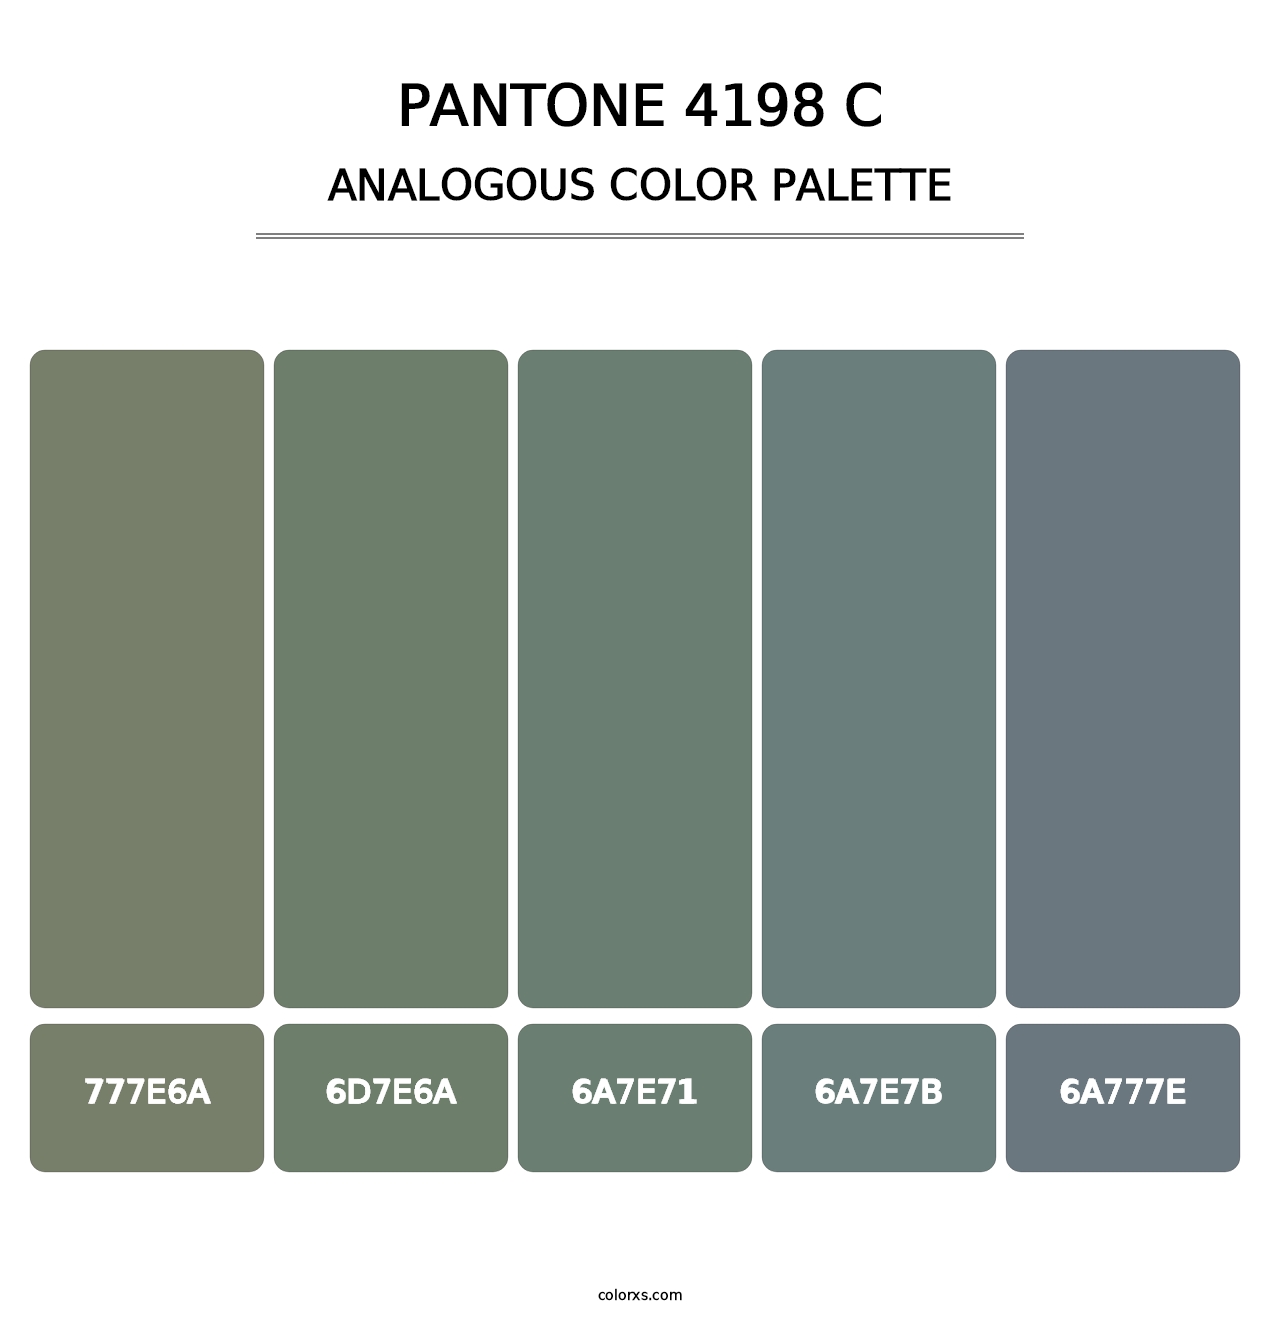 PANTONE 4198 C - Analogous Color Palette